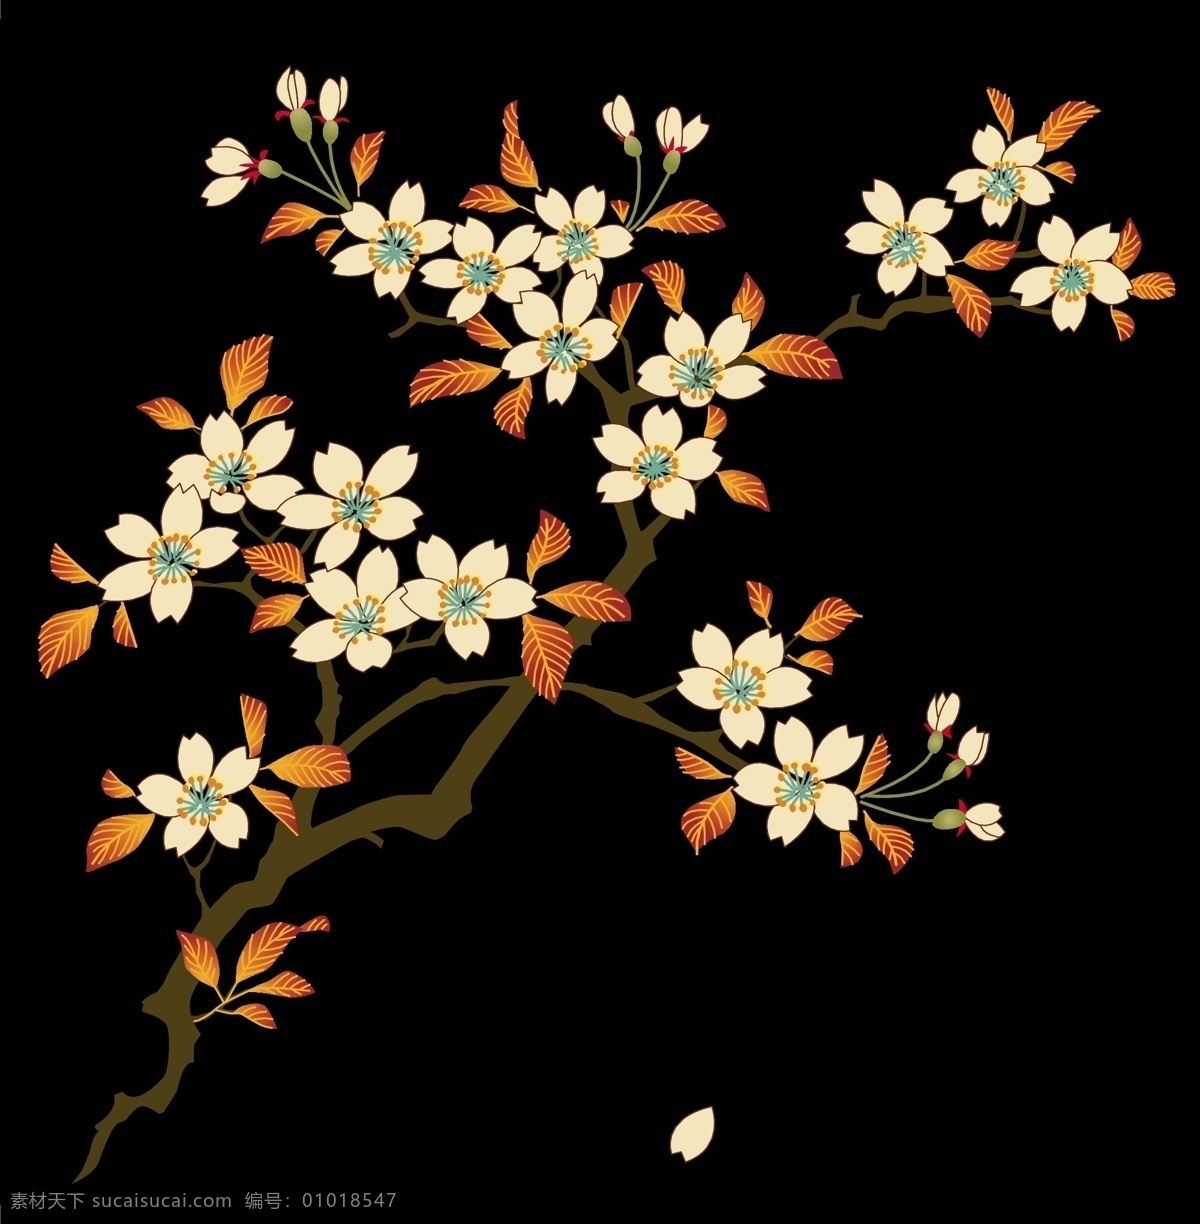 日本 传统 图案 矢量 花卉 植物 传统图案 花纹 底纹边框 花纹花边 矢量图库